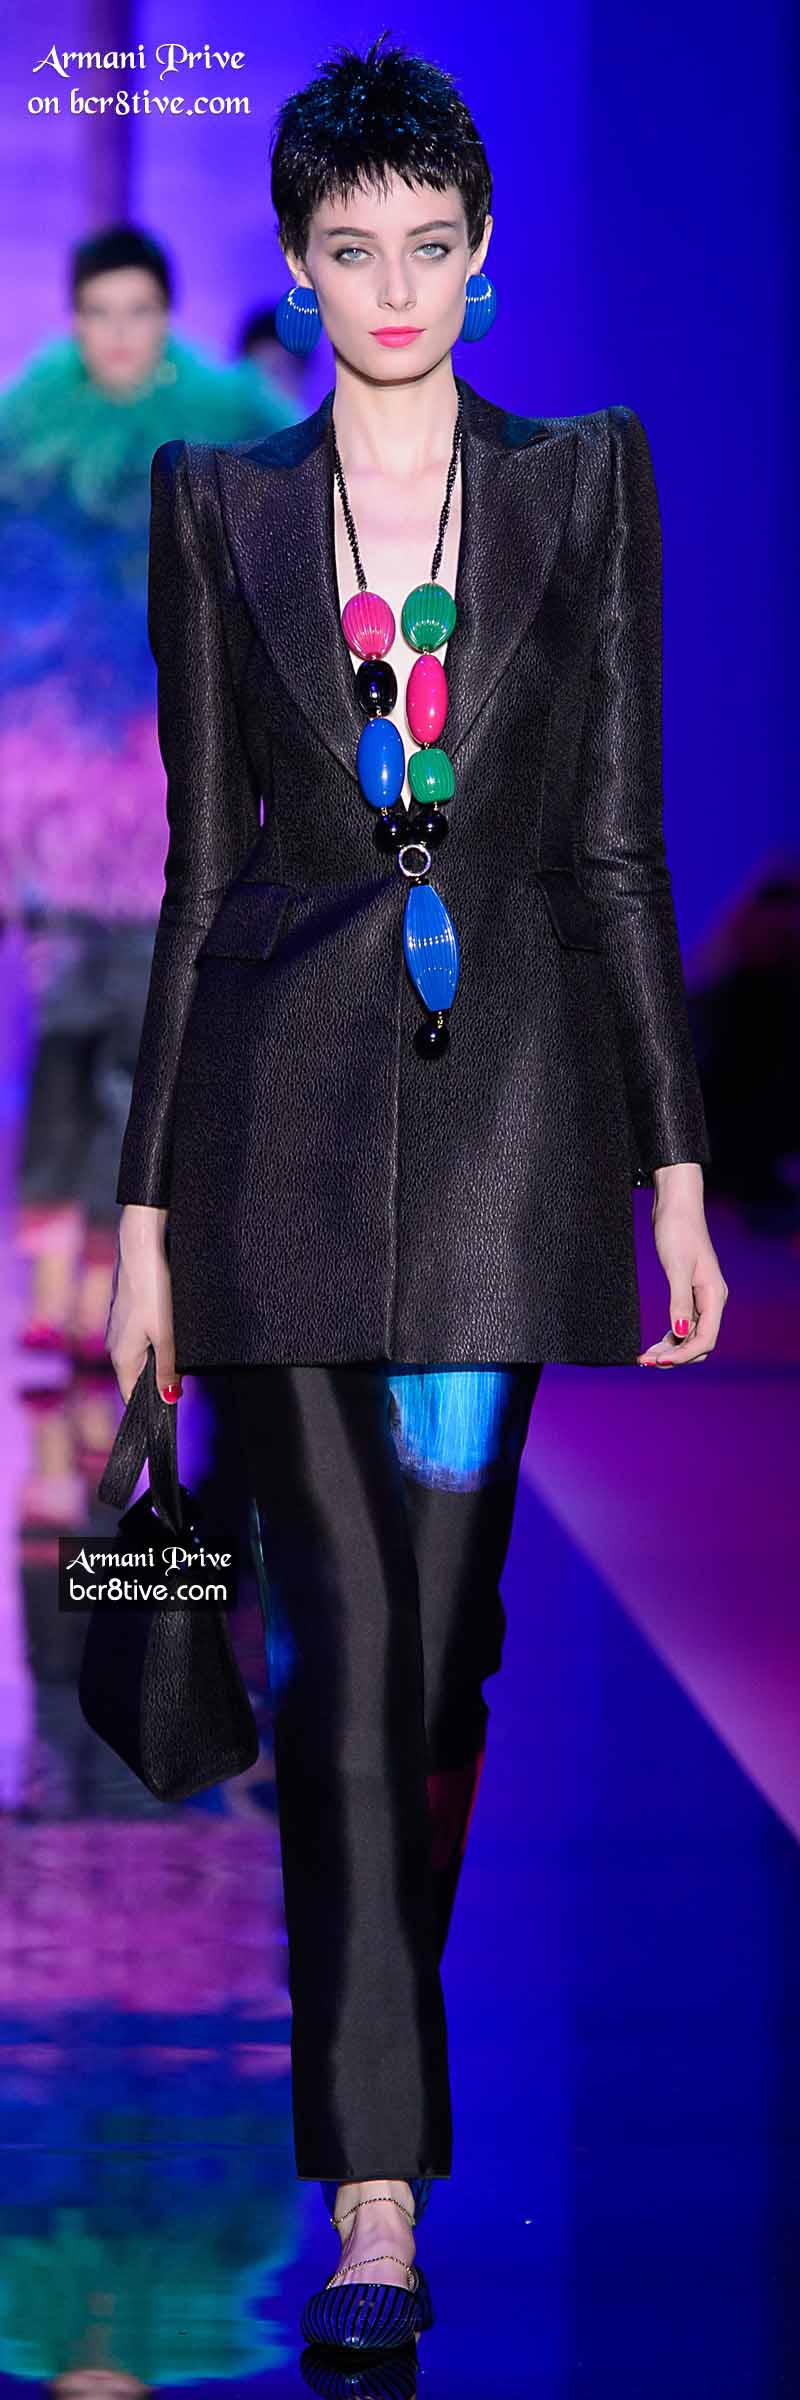 Giorgio Armani Privé Fall Winter 2015 Haute Couture